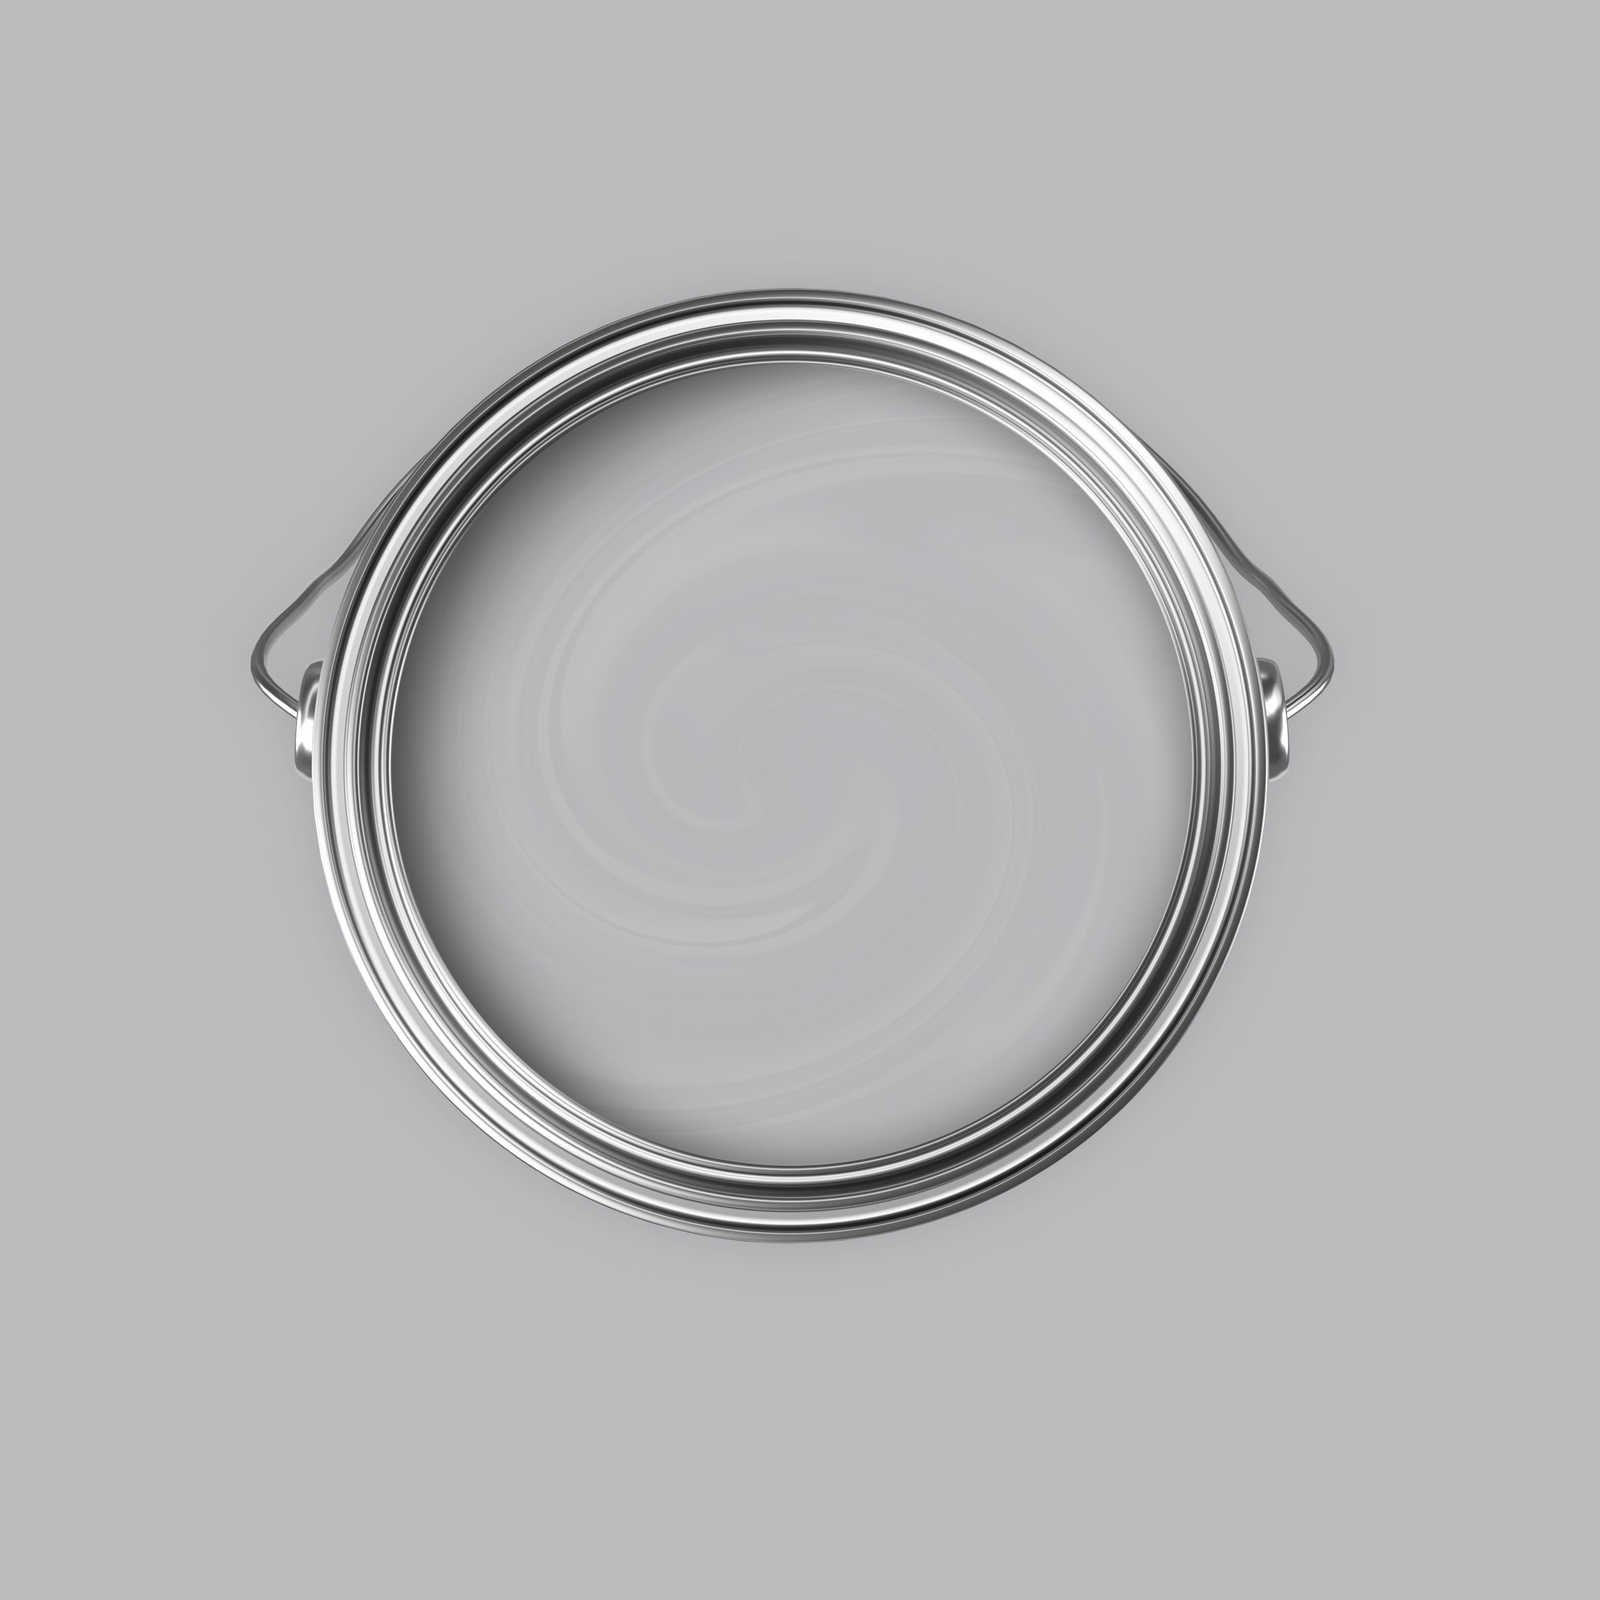             Premium Muurverf gebalanceerd zilver »Industrial Grey« NW101 – 5 liter
        